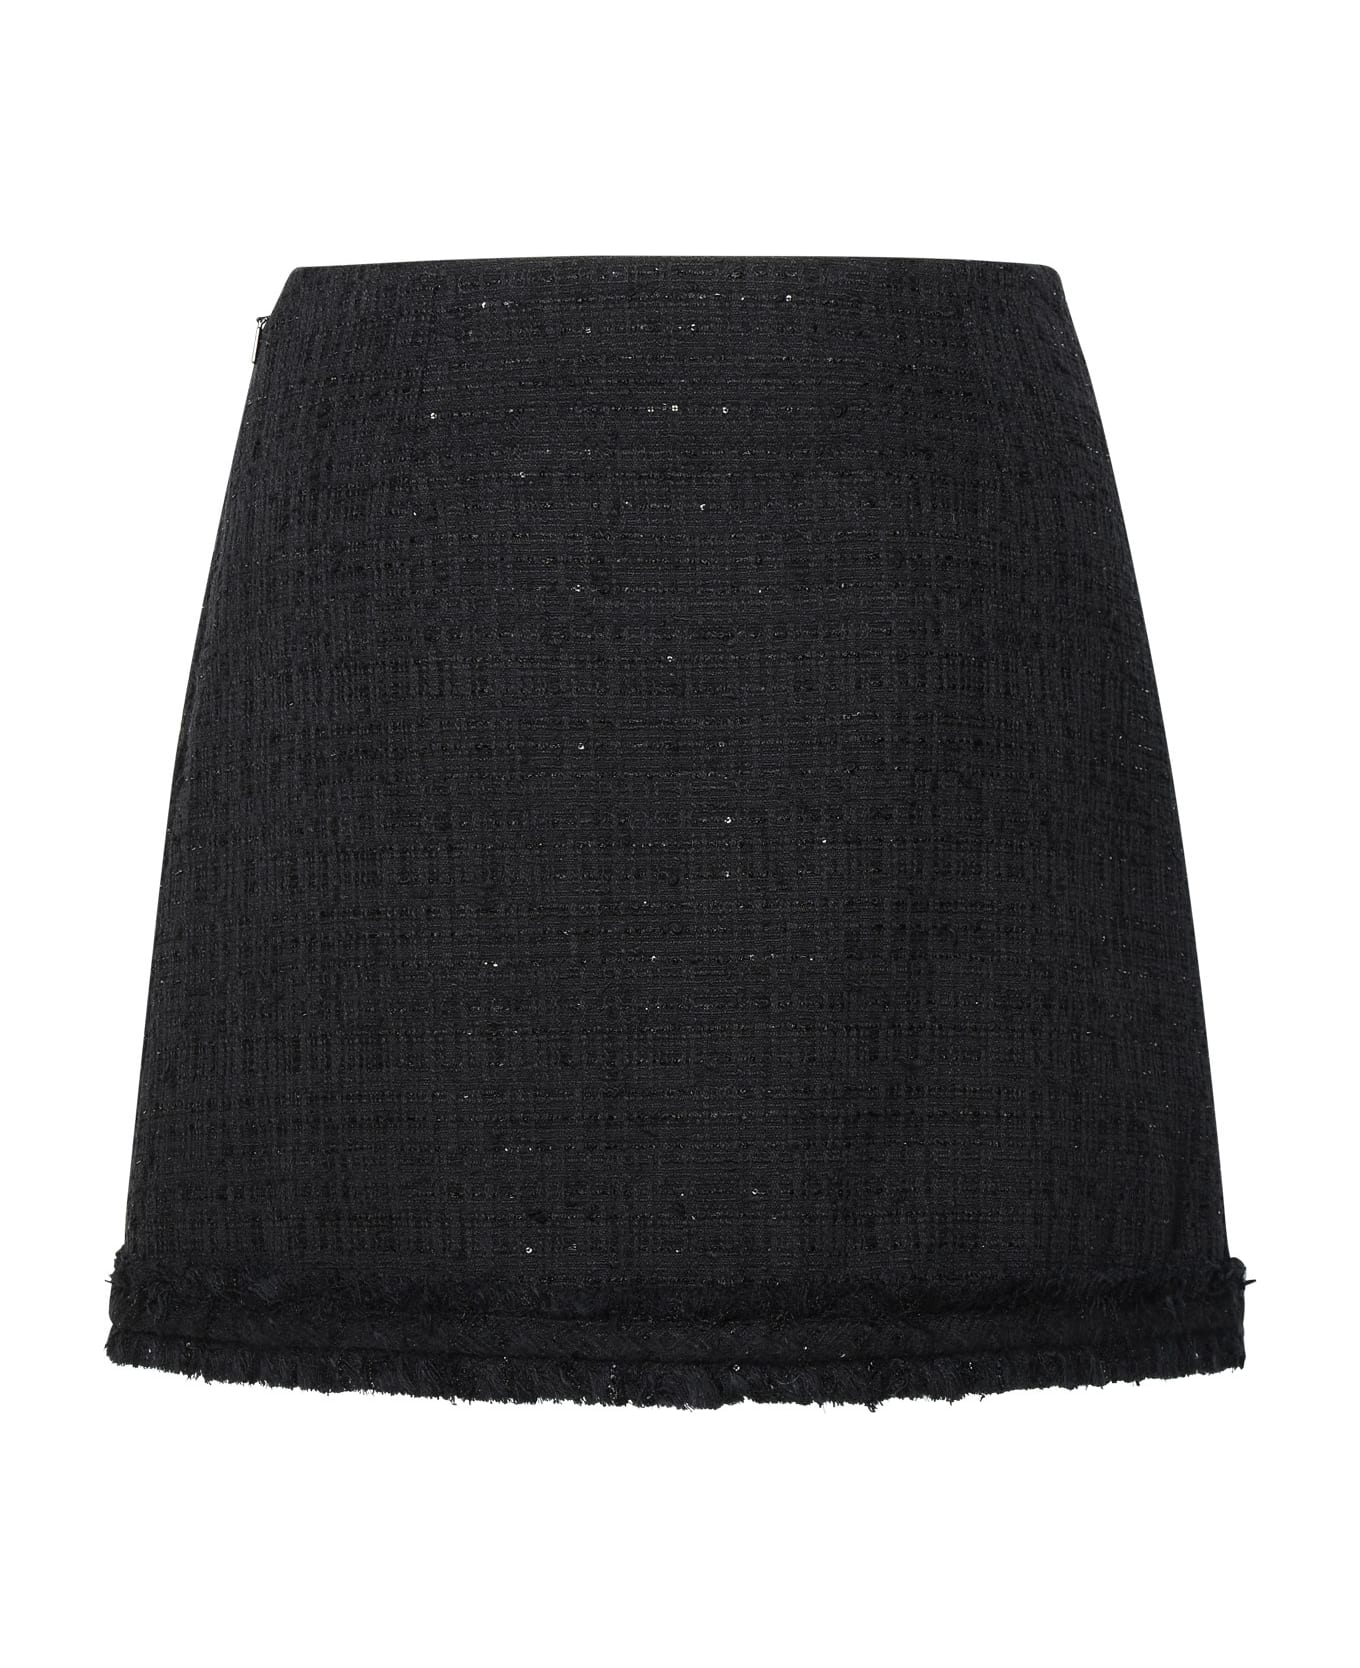 Versace Black Cotton Blend Miniskirt - Black スカート